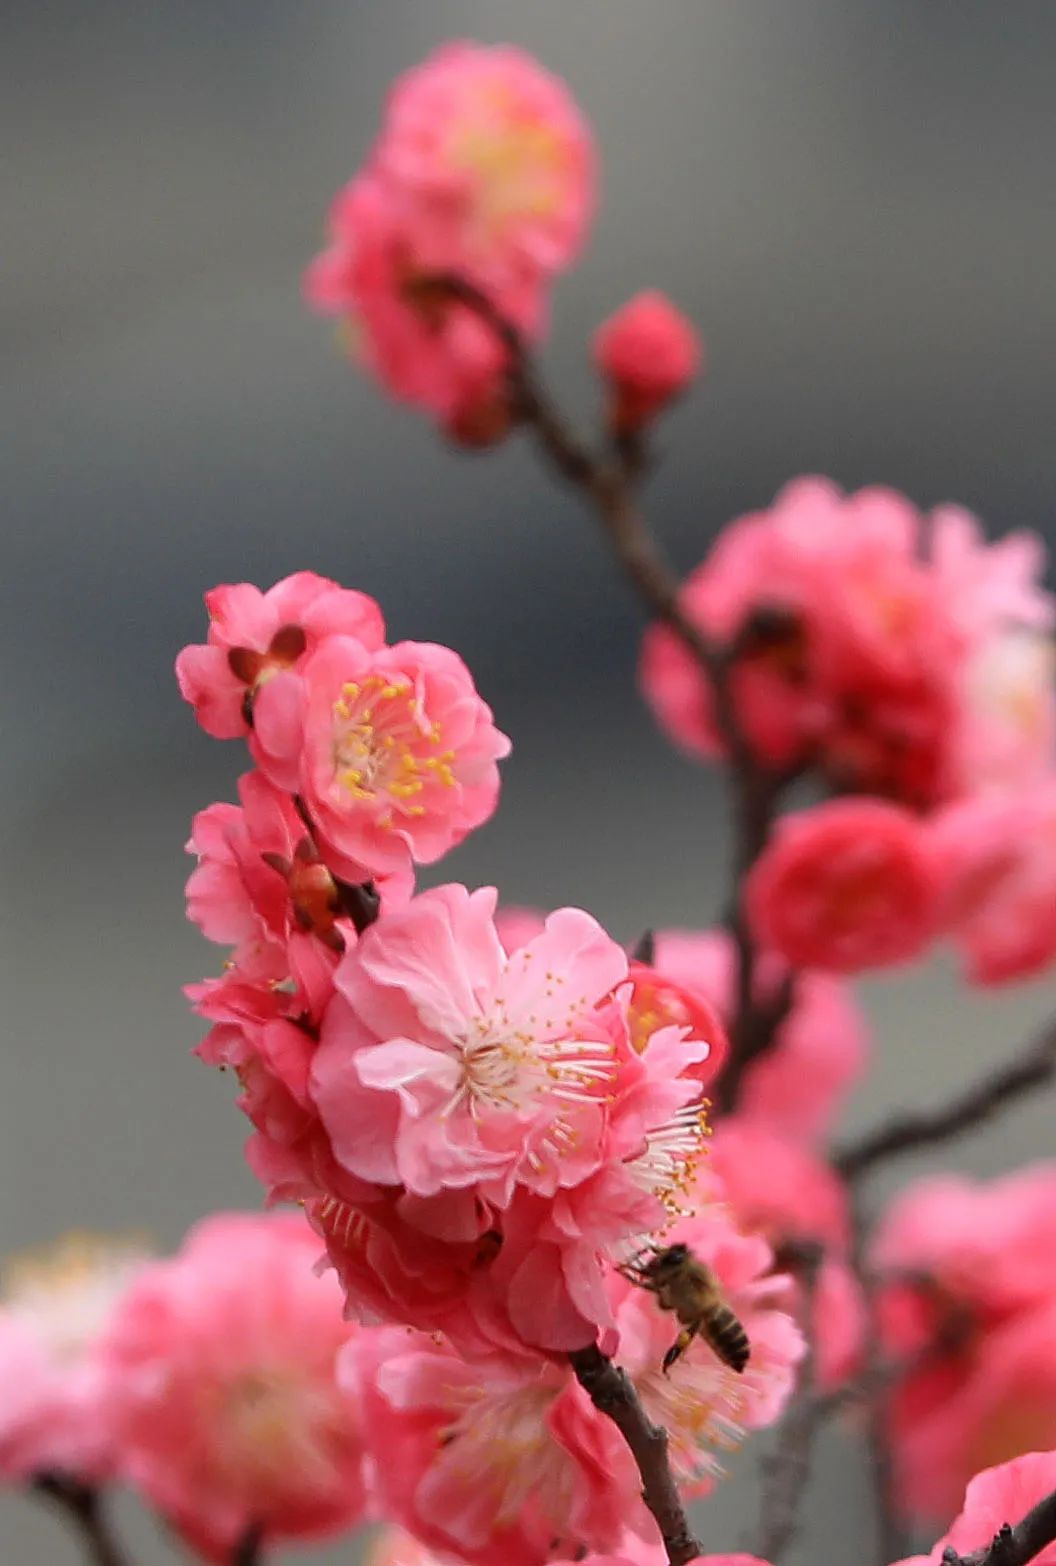 正悄悄透露着春天的气息 这个时节红梅花开得正艳 构成一幅最美风景图